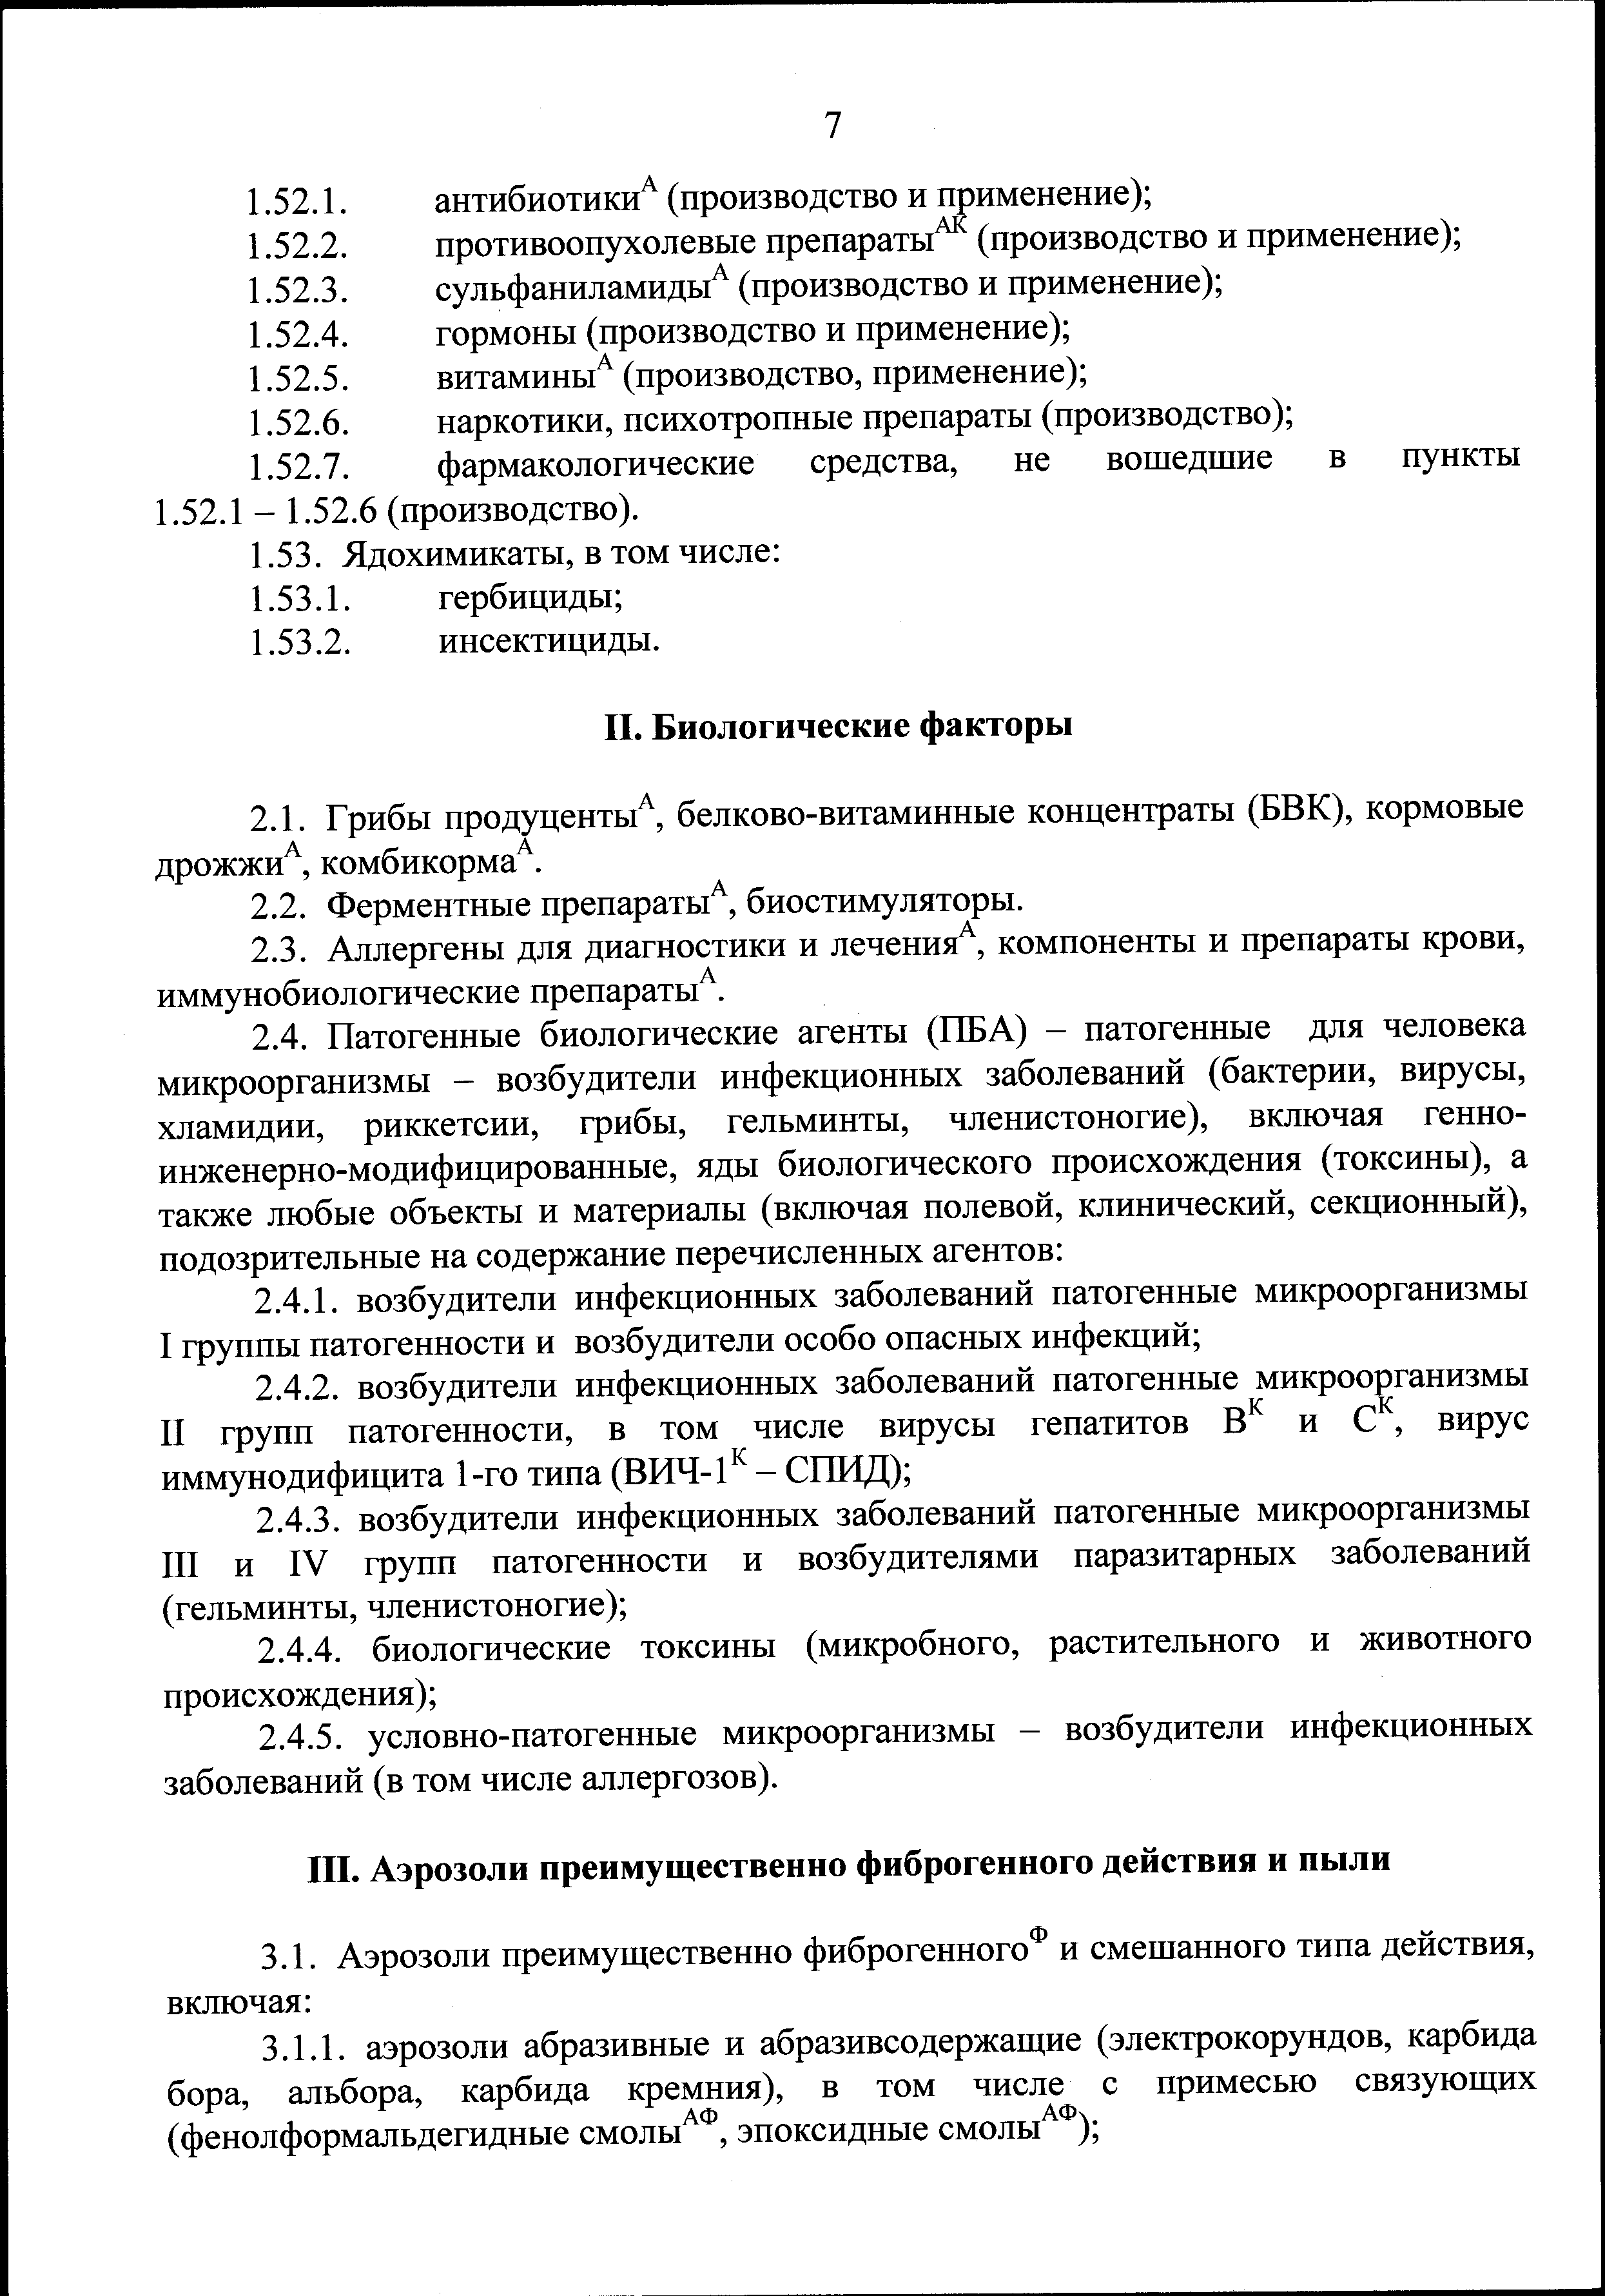 Минздрава россии no 1420н